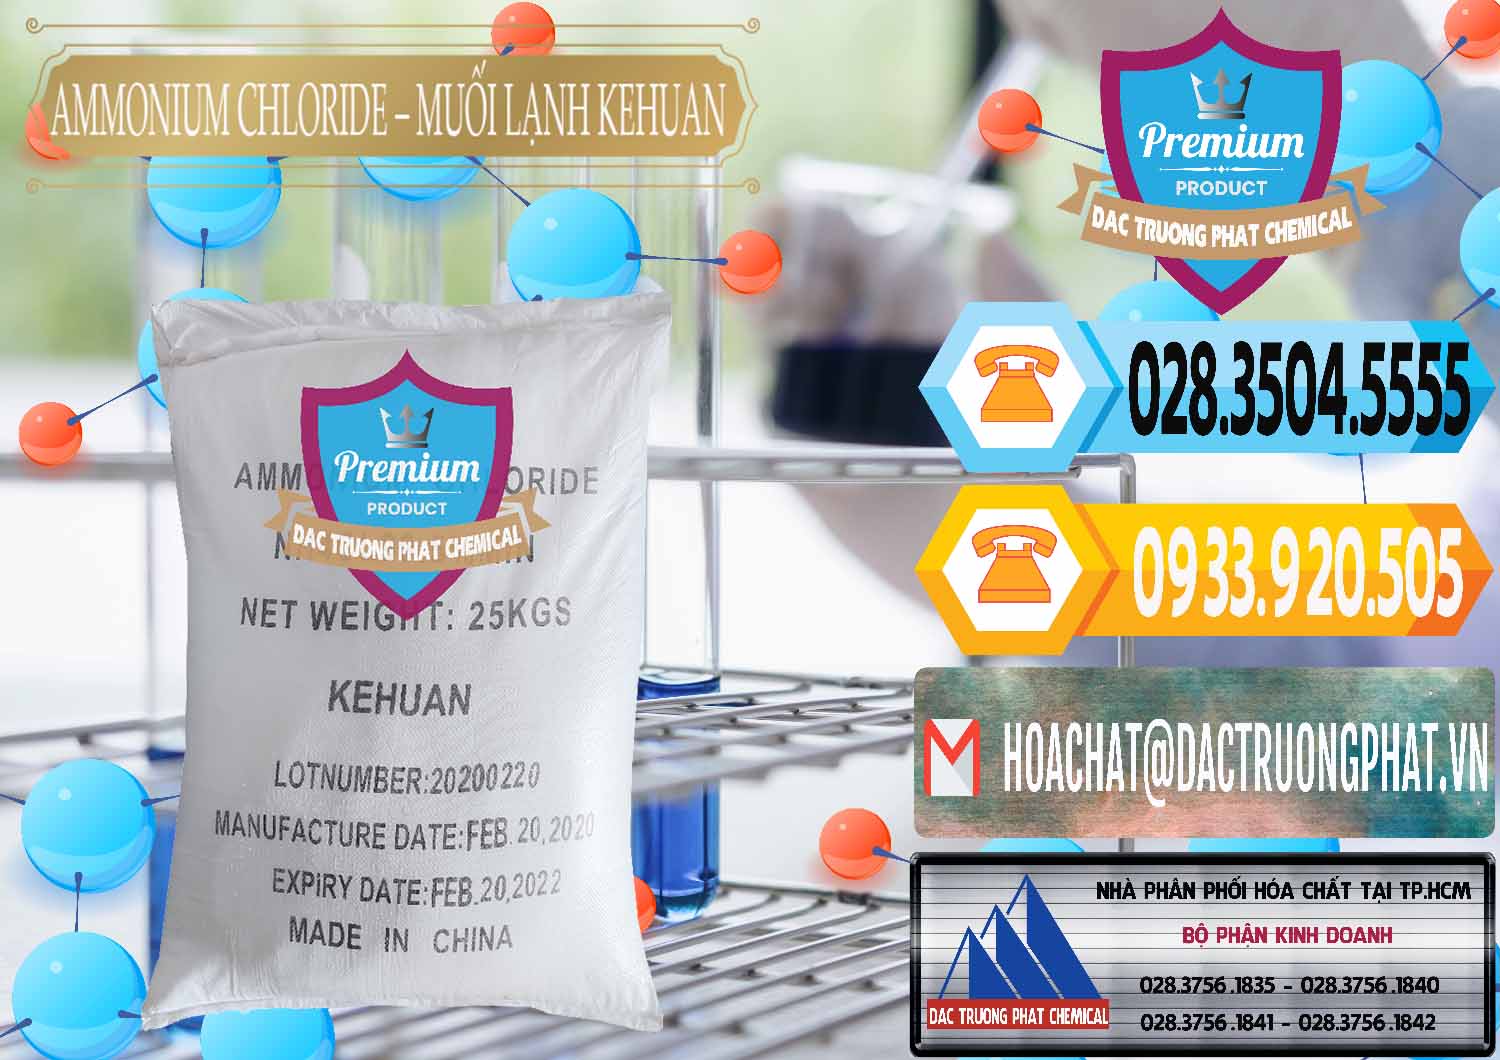 Đơn vị chuyên cung ứng ( bán ) Ammonium Chloride – NH4CL Muối Lạnh Kehuan Trung Quốc China - 0022 - Cty bán & cung cấp hóa chất tại TP.HCM - hoachattayrua.net